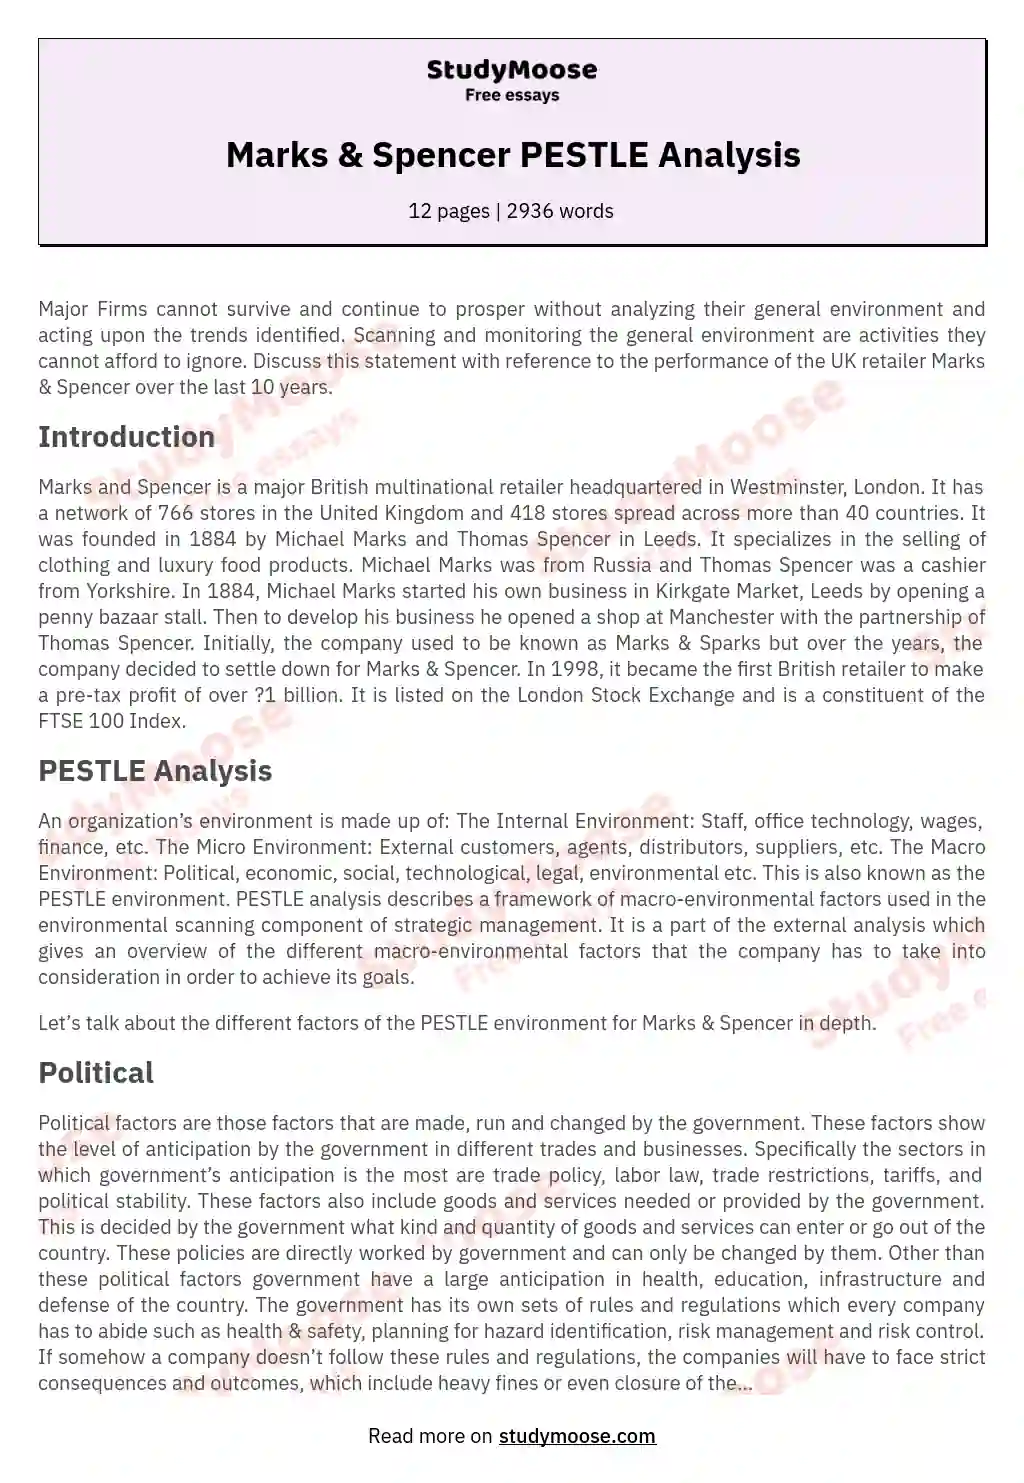 Marks & Spencer PESTLE Analysis essay